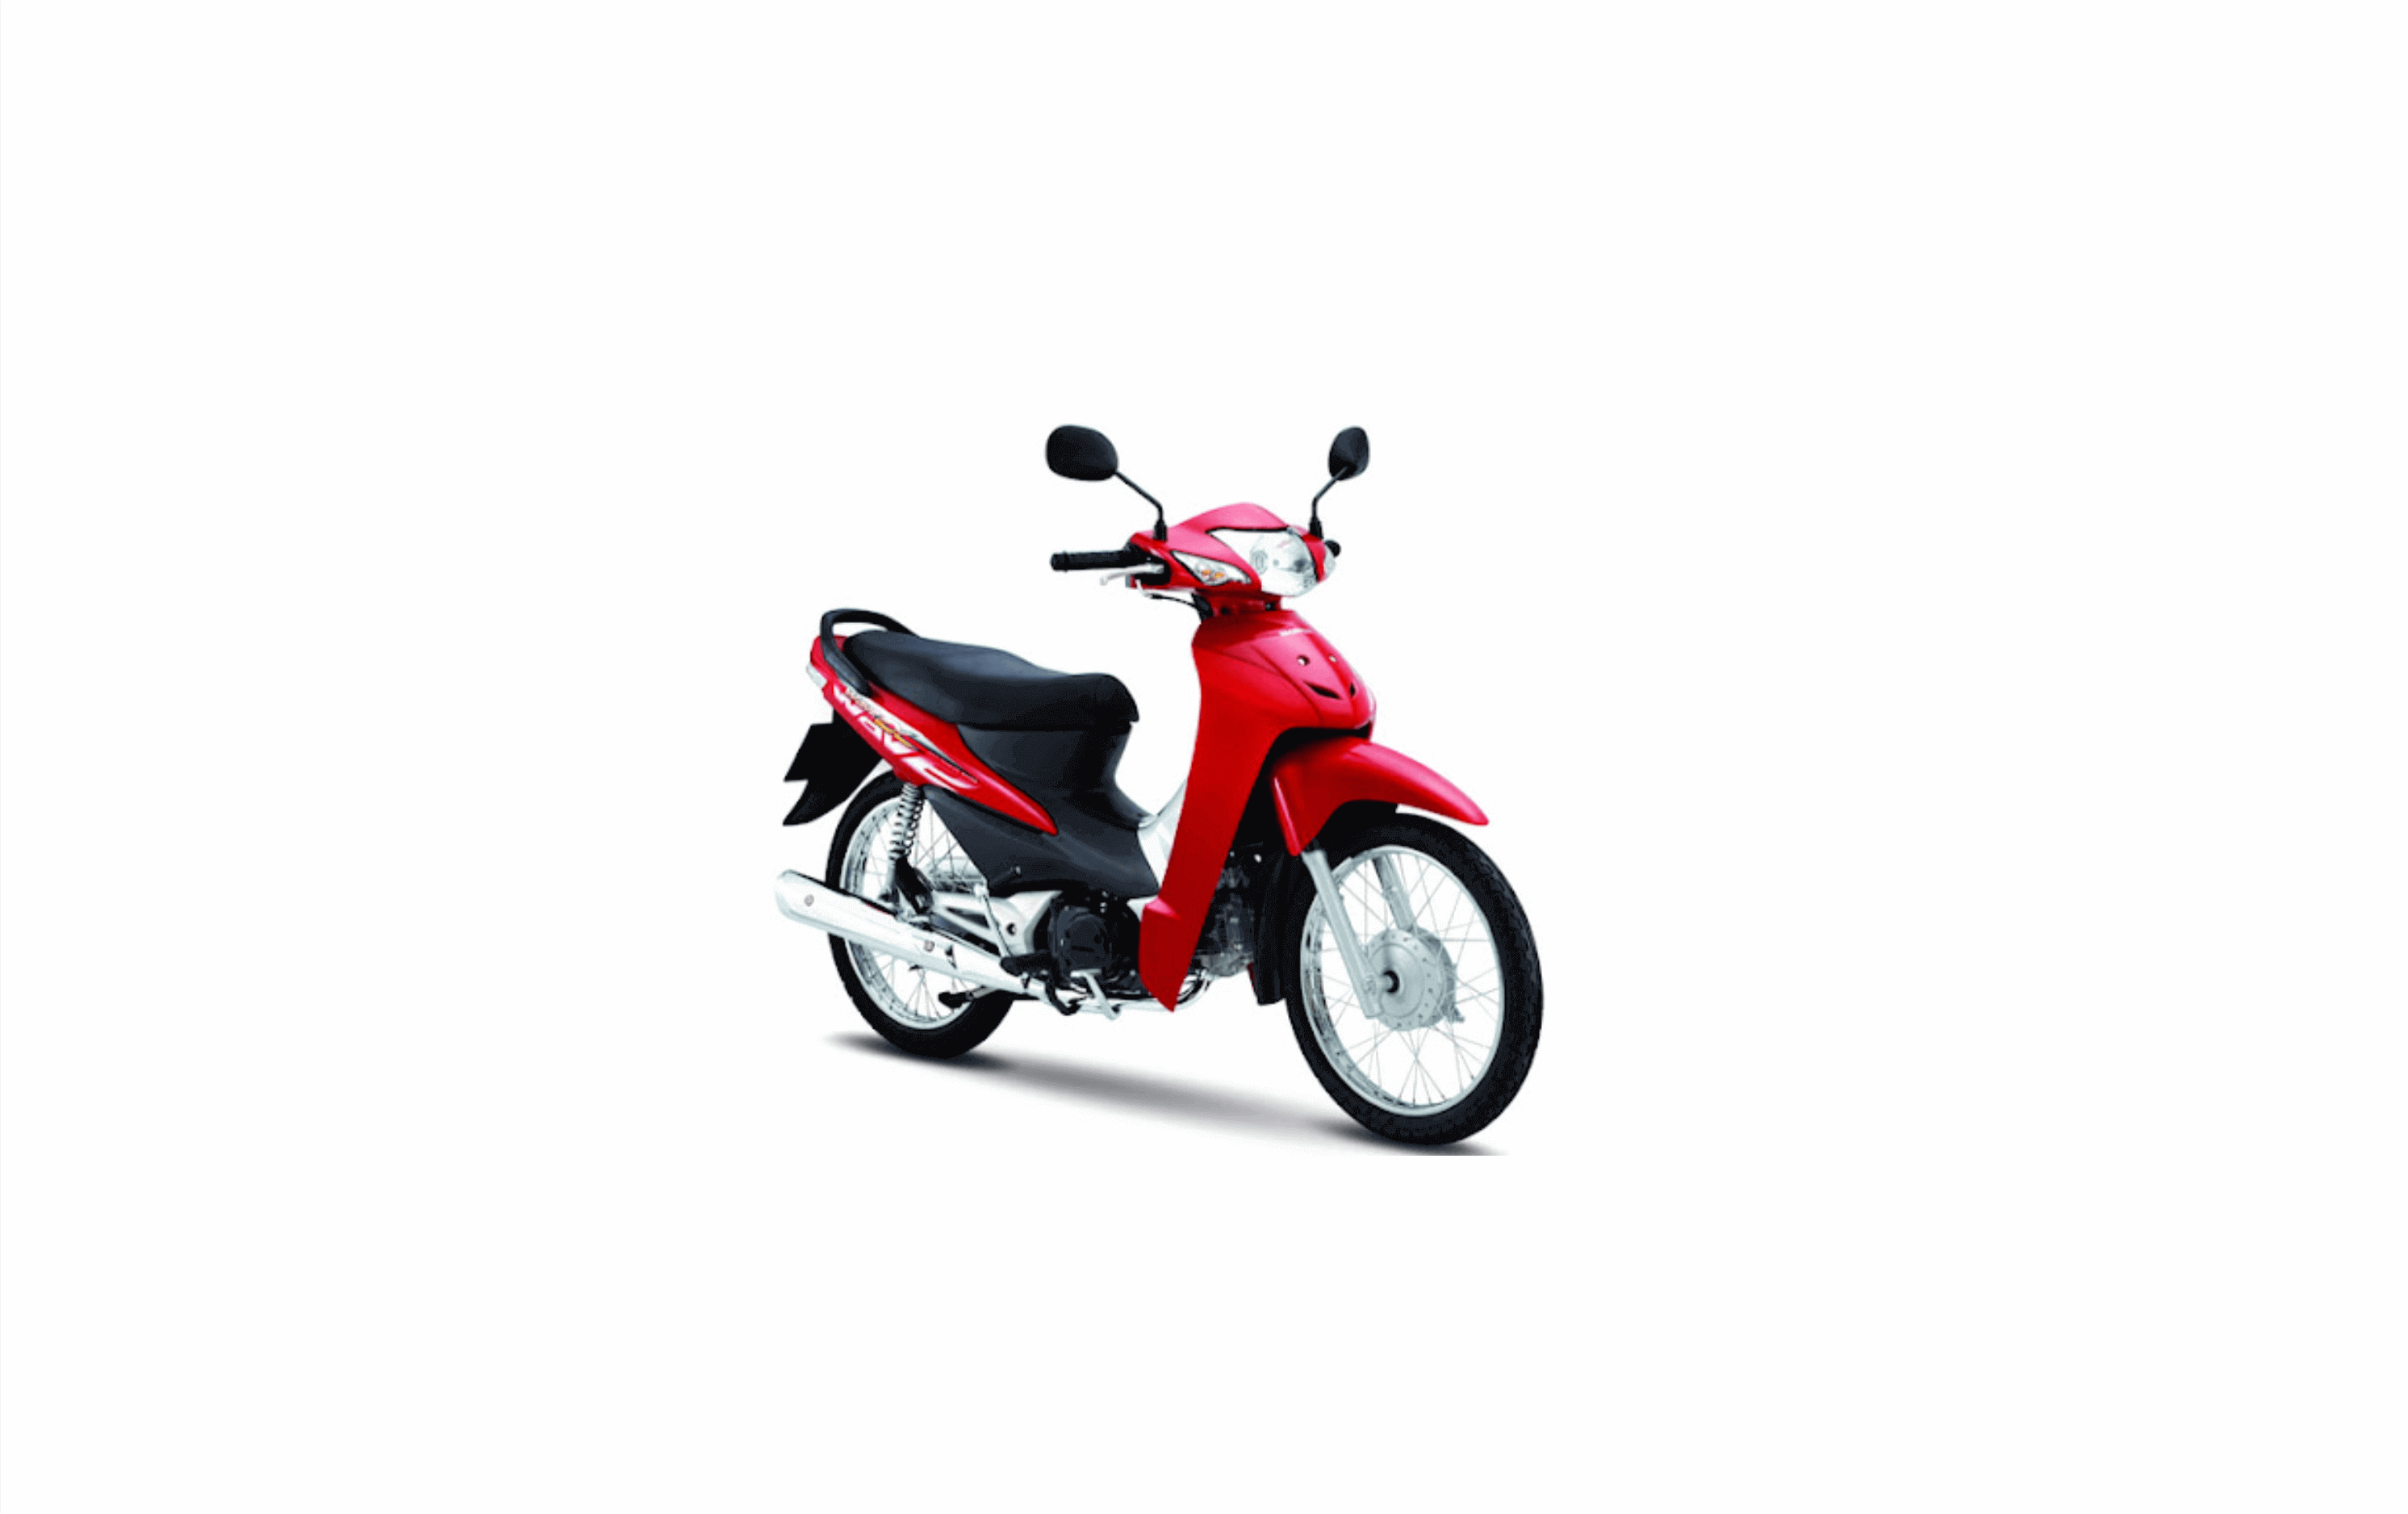 Xe Honda Wave S 110cc màu đỏ đen  Anh Nam  MBN4767  0356181475